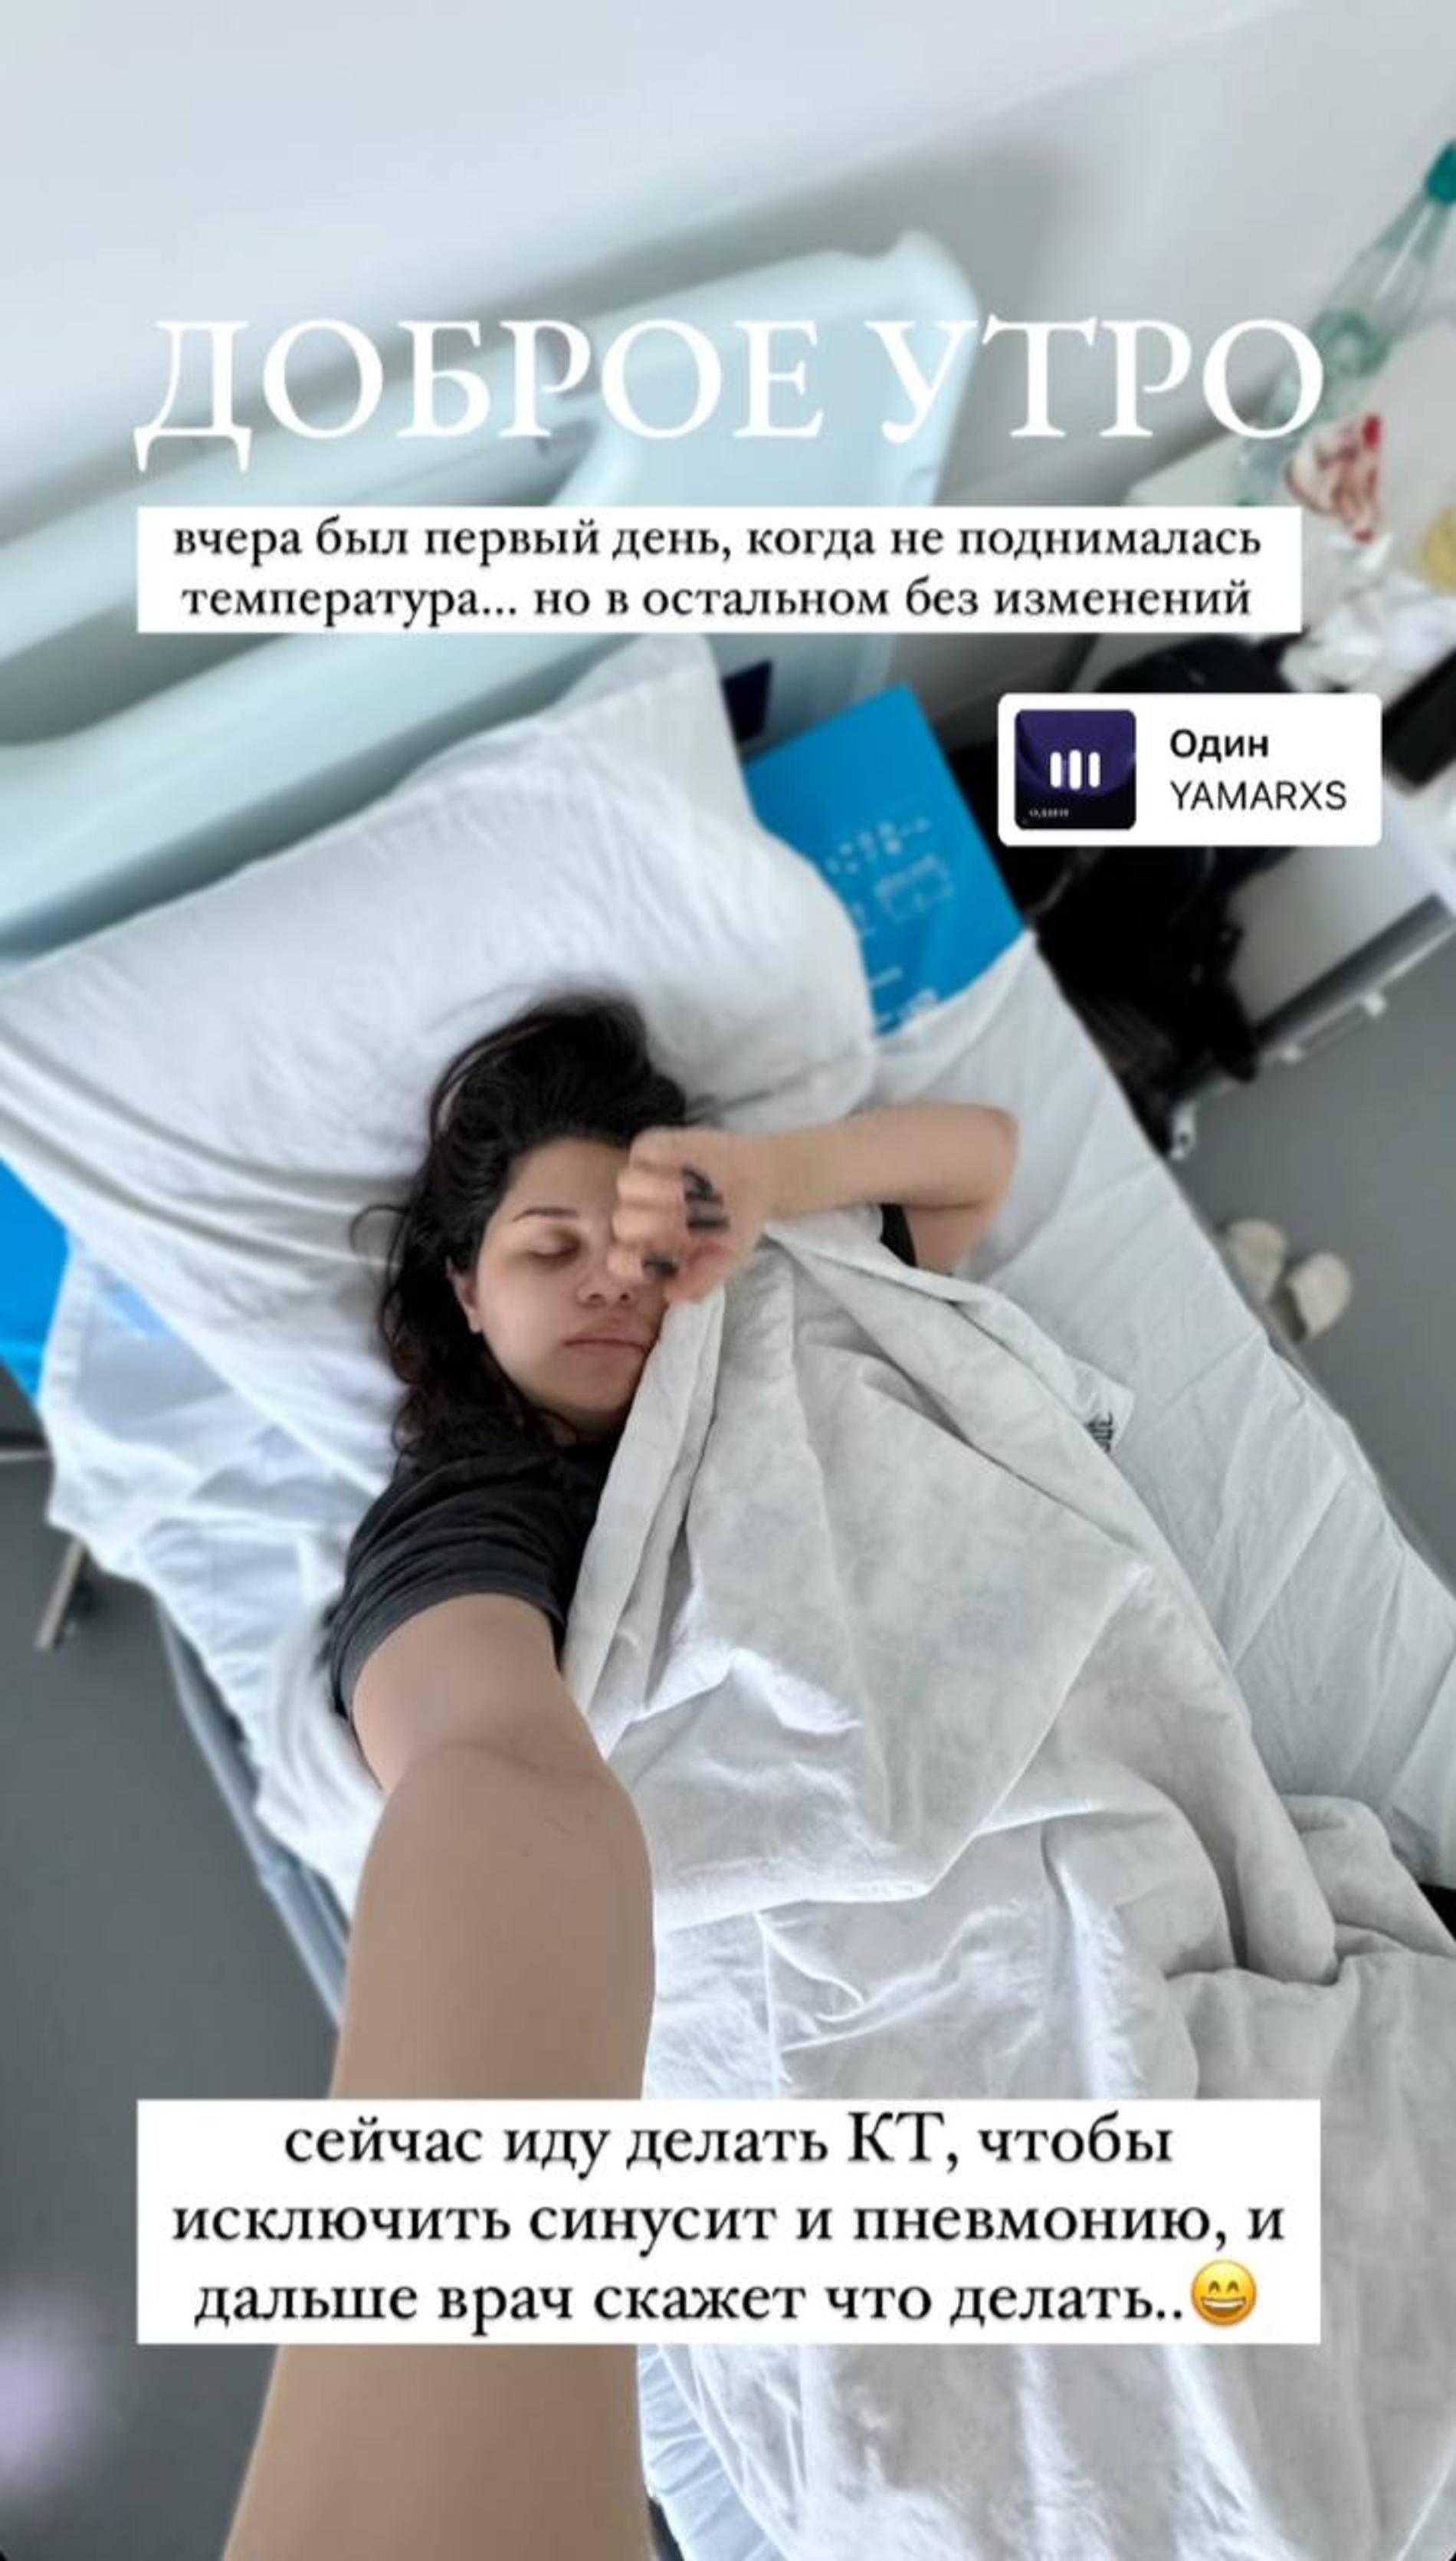 Звезда «Дома-2» Алиана Устиненко, попавшая в больницу перед родами, раскрыла свой диагноз: «Никогда такого не было»